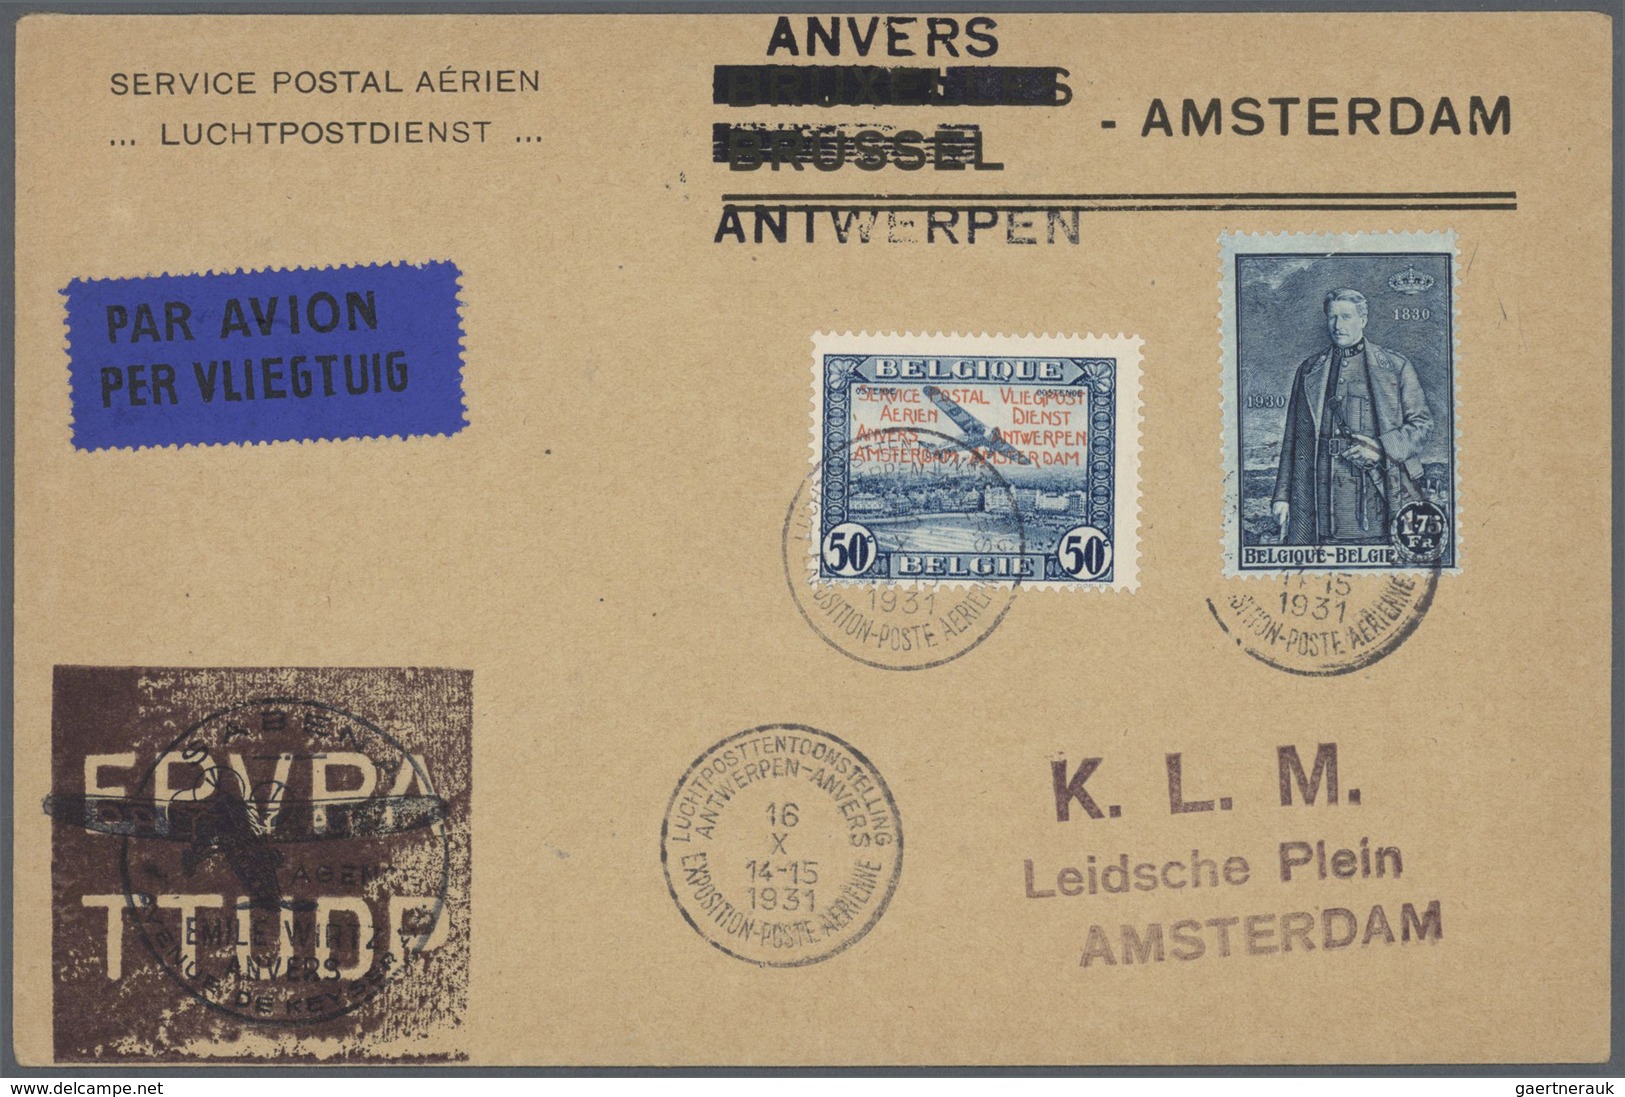 Belgien: 1916 - 1964, umfangreiche Sammlung von ca. 320 Belegen, zumeist frankierte Briefe und einig